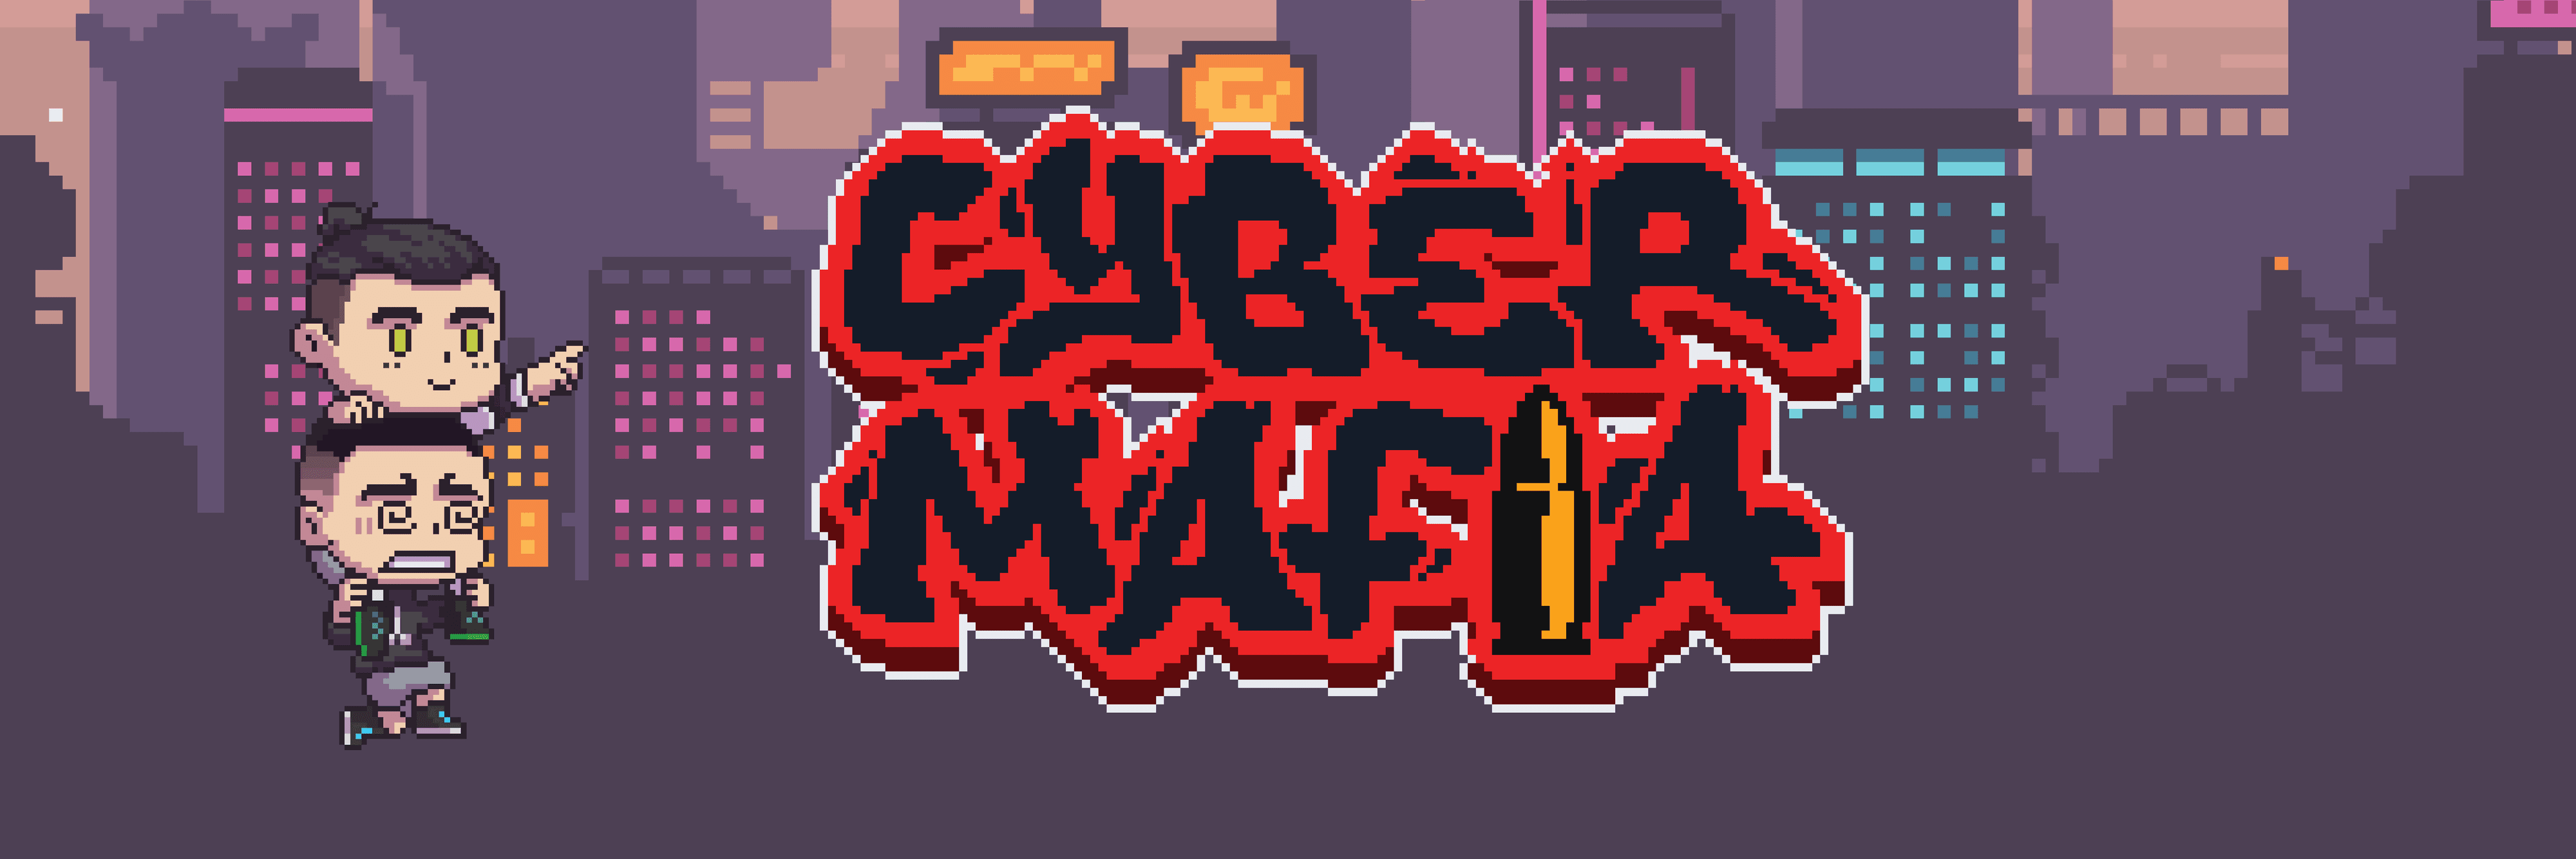 Cybermafia-vault banner